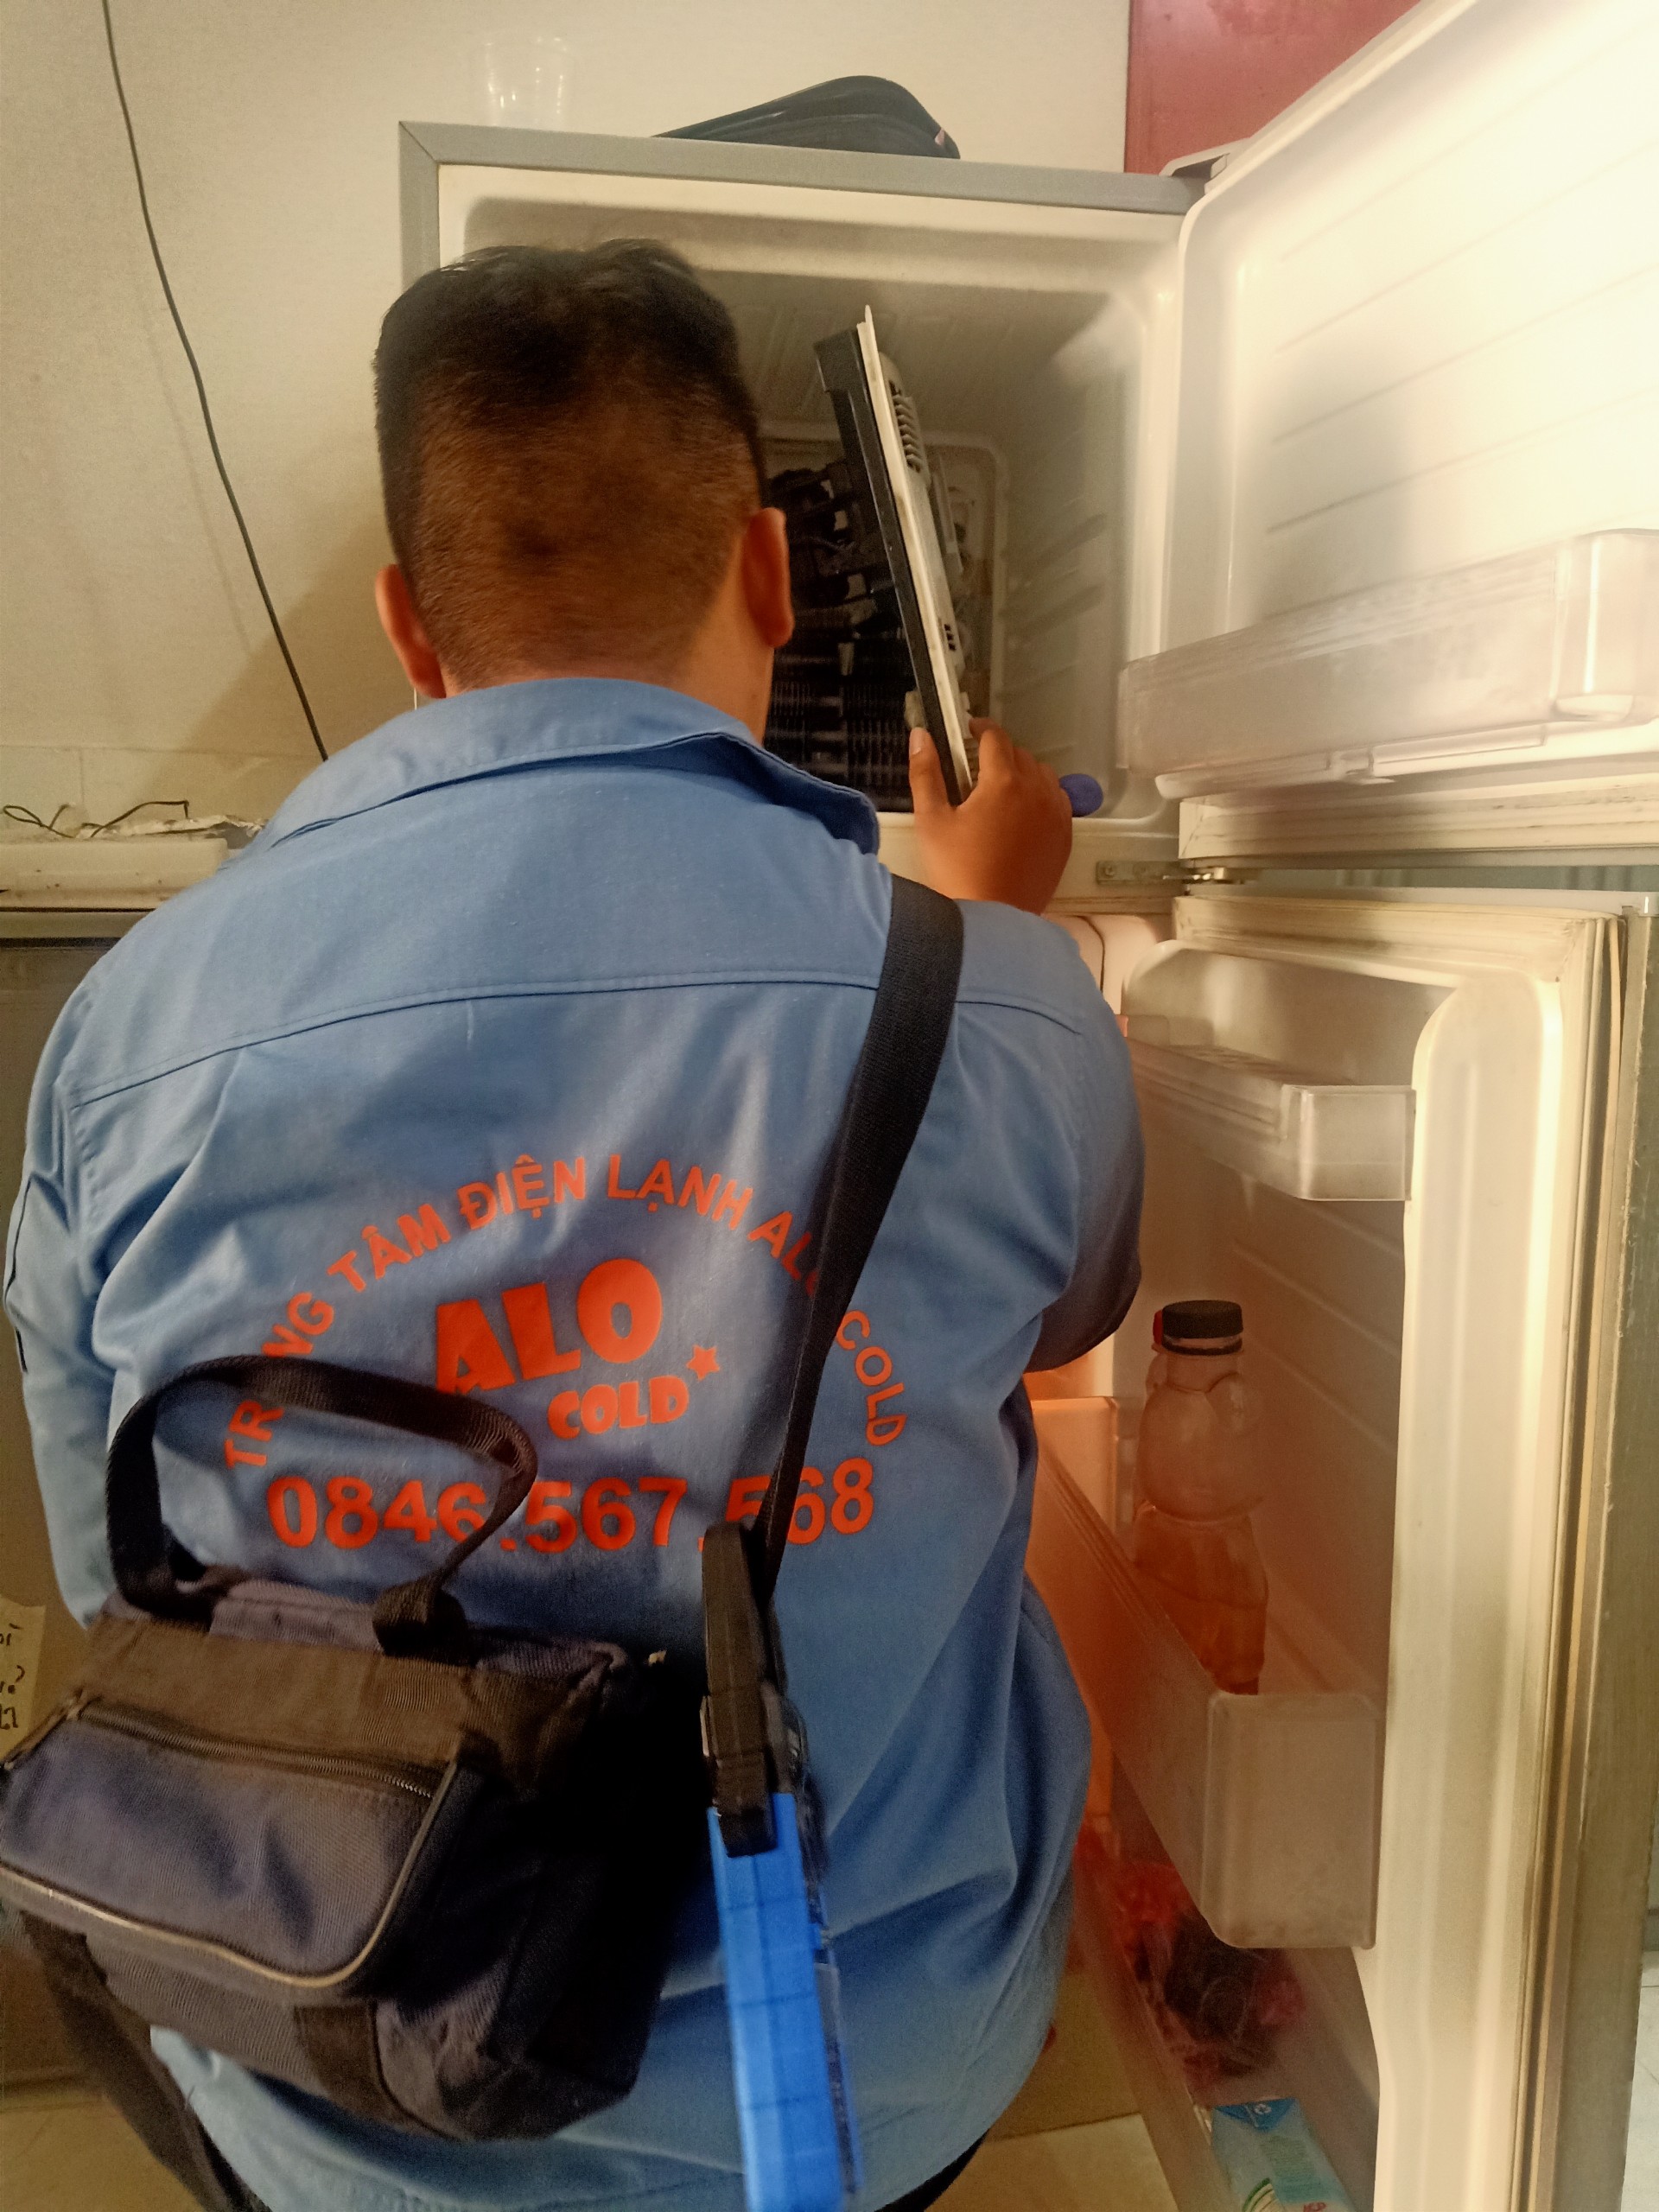 Dịch vụ sửa tủ lạnh chuyên nghiệp - Điện Lạnh Alo Cold